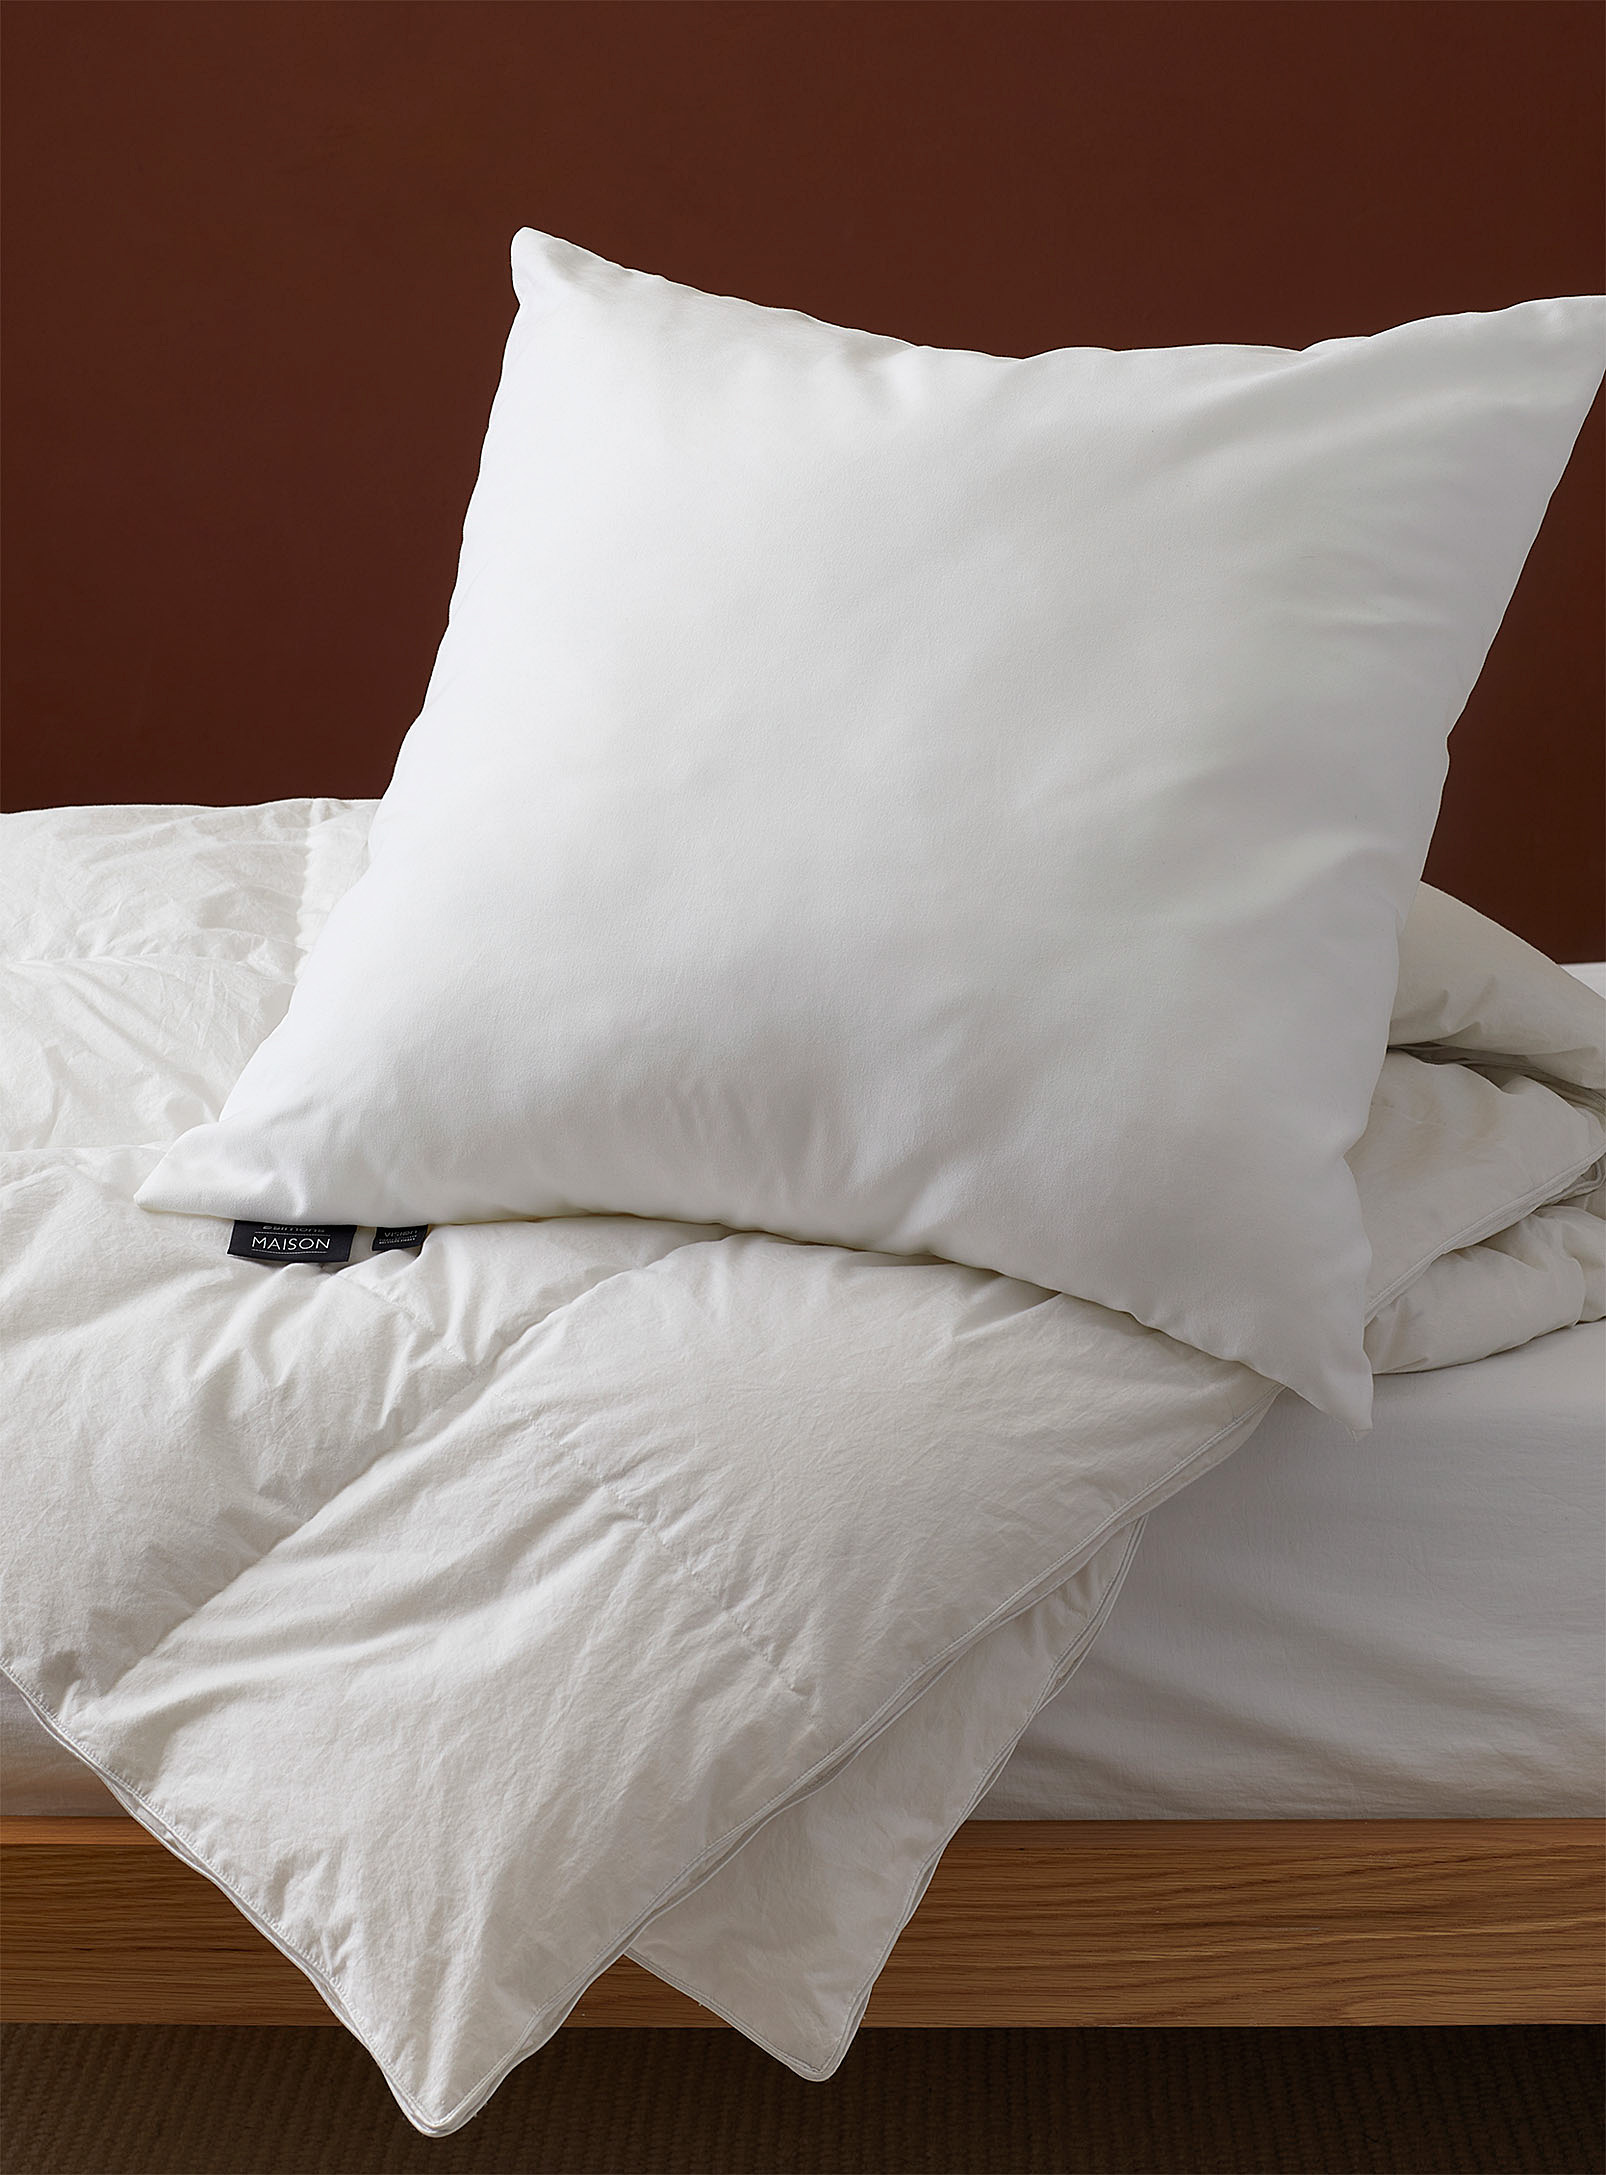 Simons Maison Evolution Euro Pillow In White